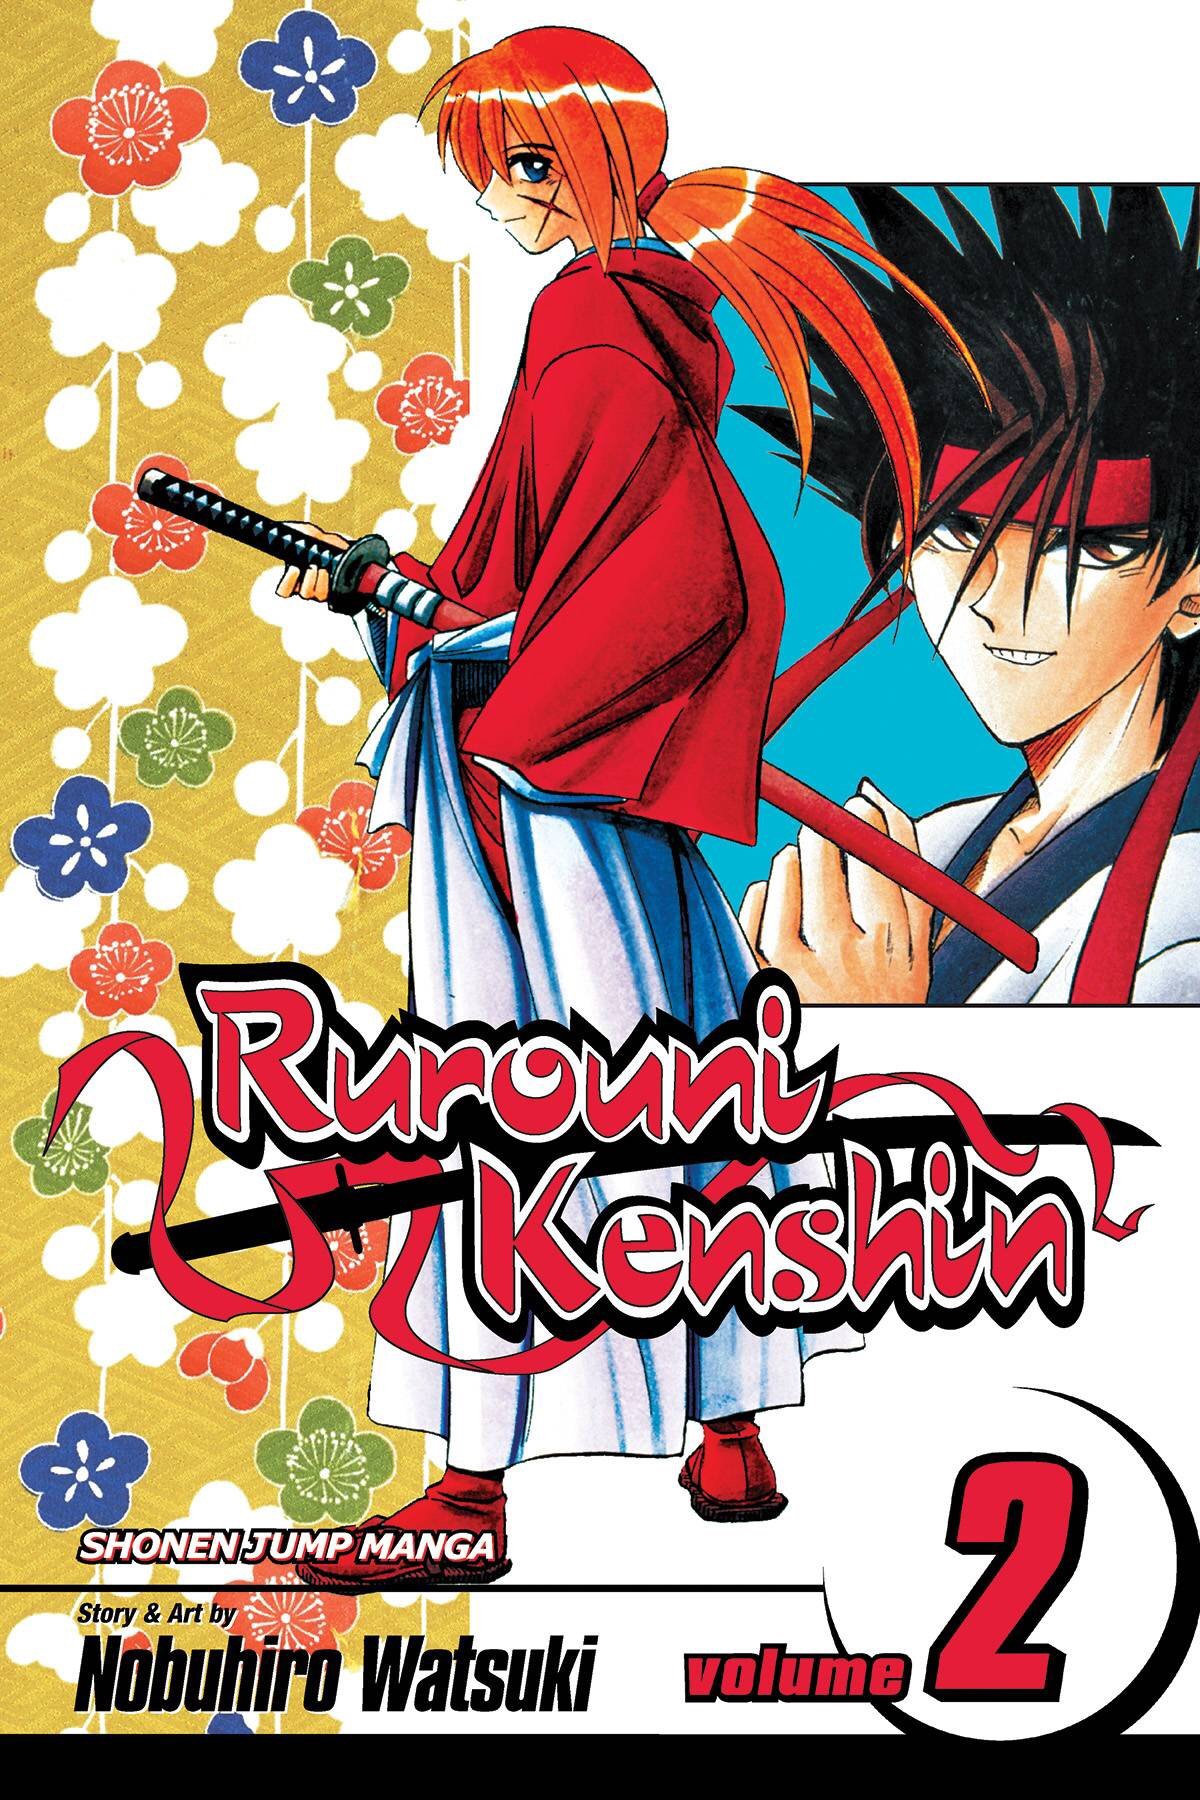 Rurouni Kenshin: Restoration, Rurouni Kenshin Wiki